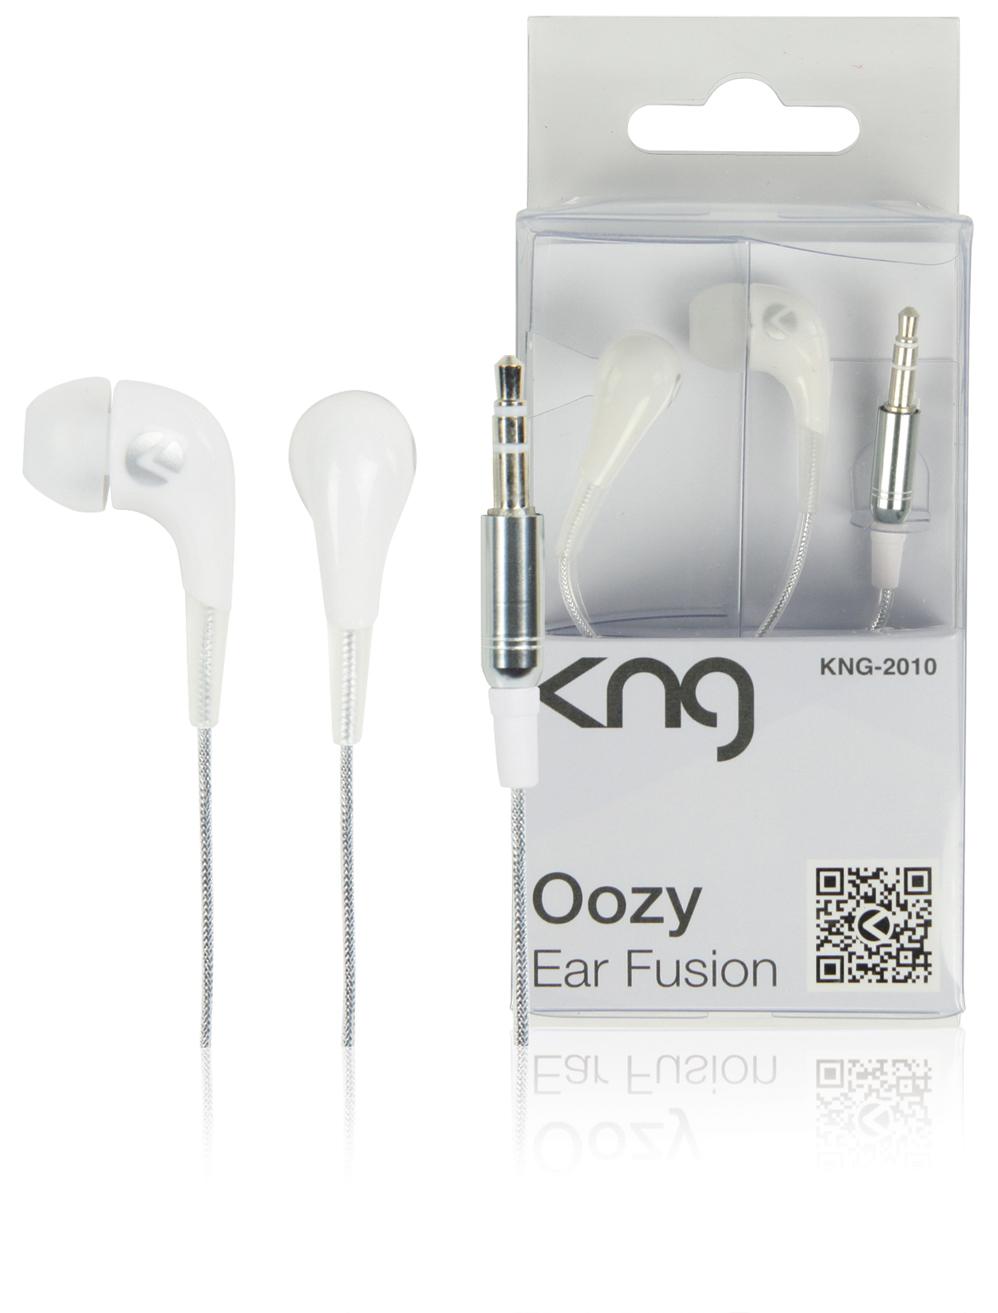 Foto Auriculares Oozy - Ear Fusion KNG 102dB Color Blanco foto 963065